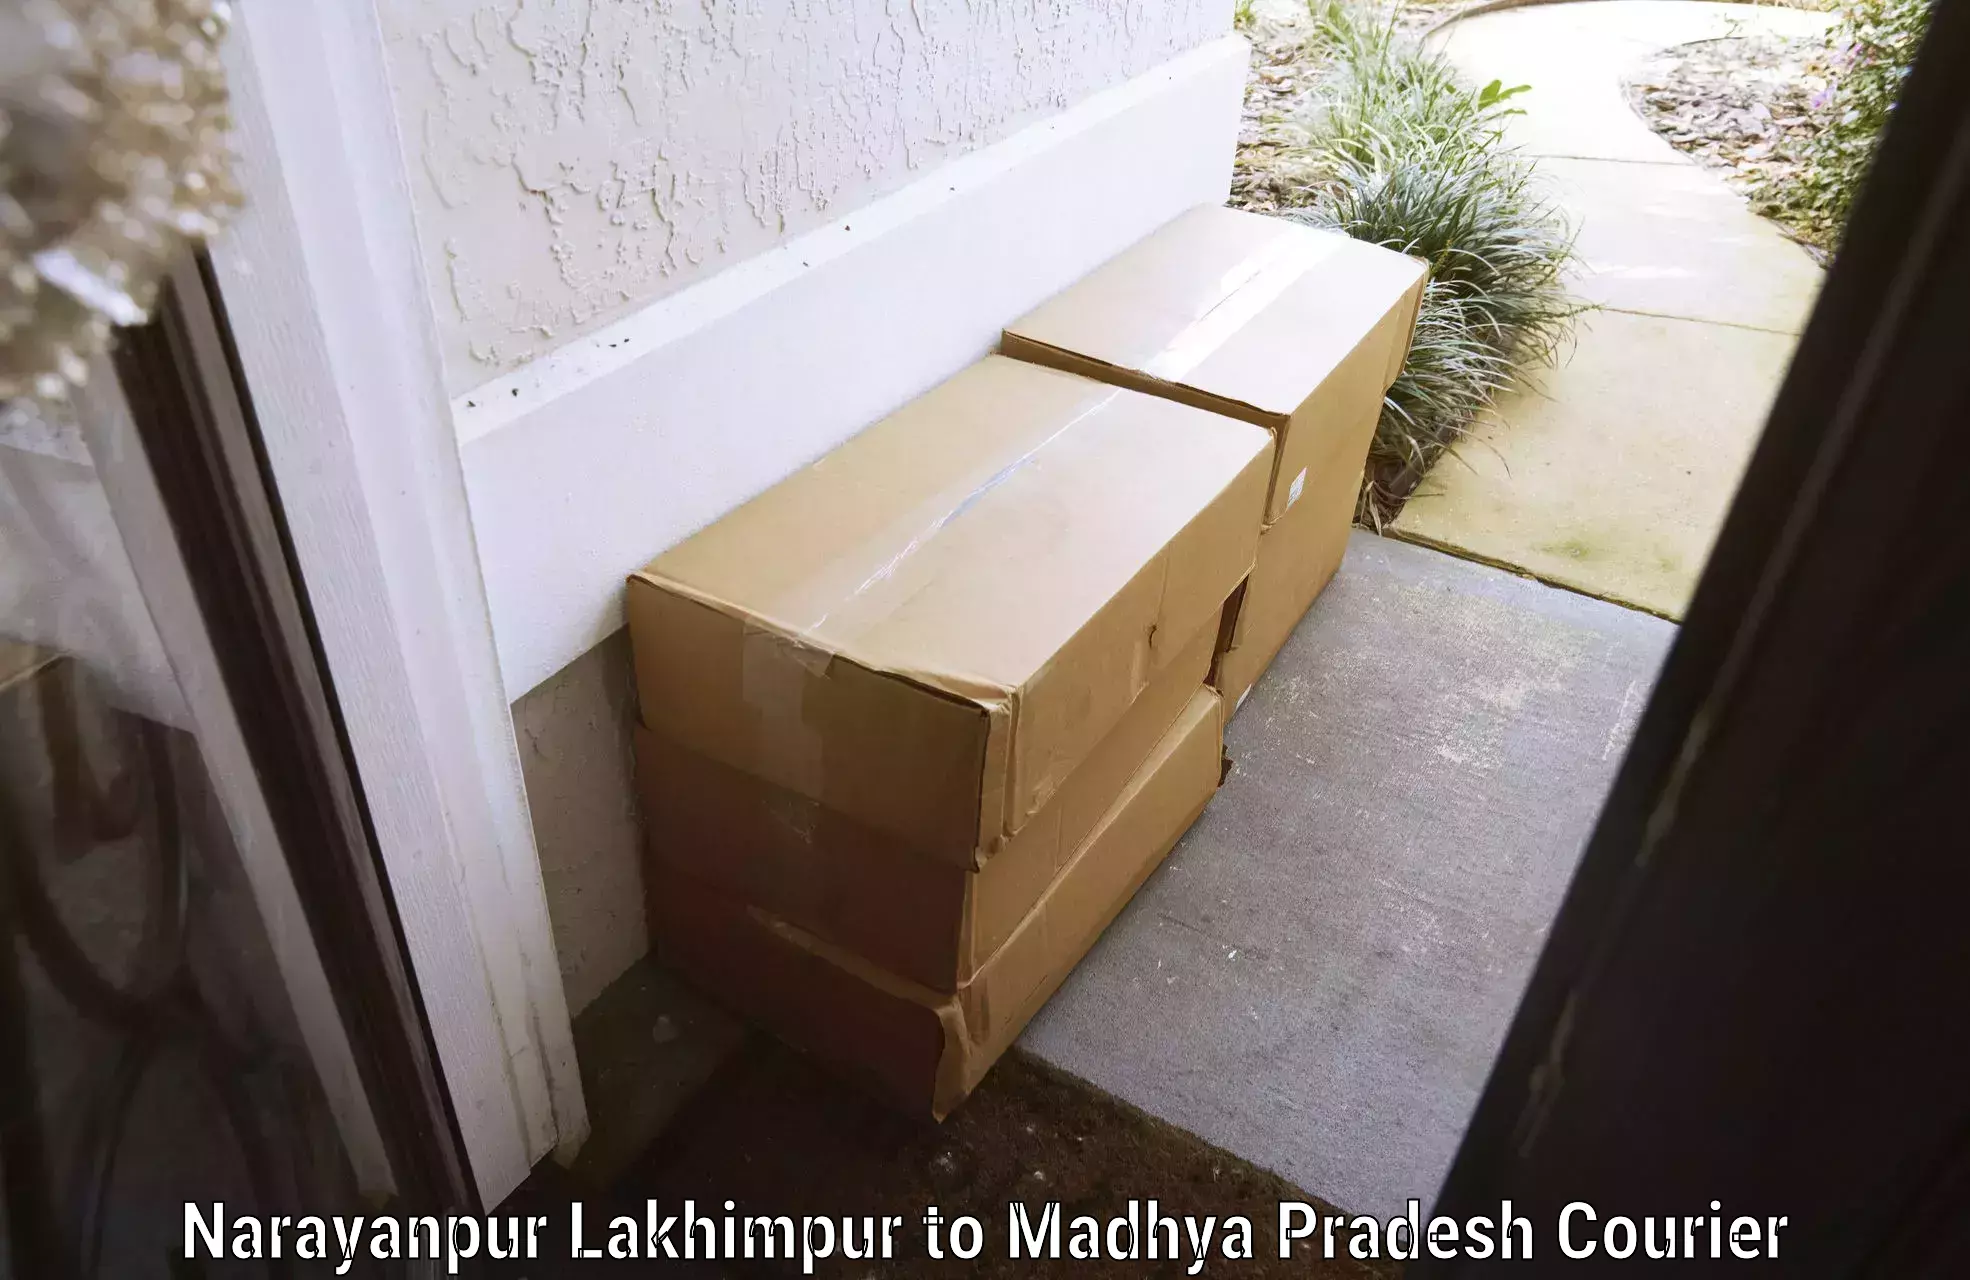 Artwork baggage courier Narayanpur Lakhimpur to Niwari